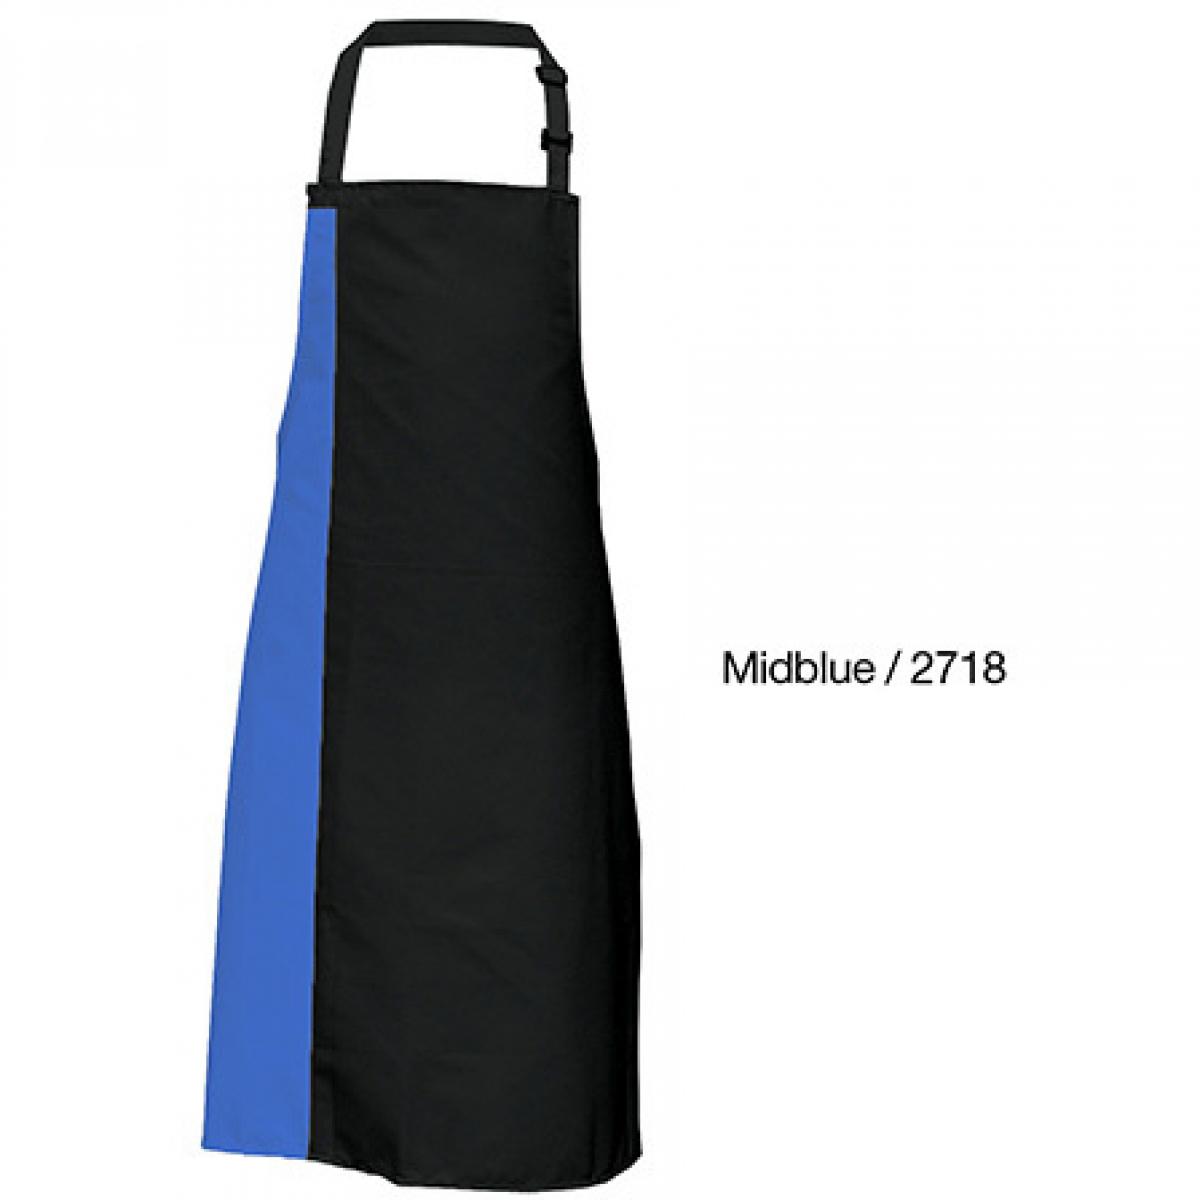 Hersteller: Link Kitchen Wear Herstellernummer: DS8572 Artikelbezeichnung: Duo Apron - 72 x 85 cm - Waschbar bis 60 °C Farbe: Black/Midblue (ca. Pantone 2718)